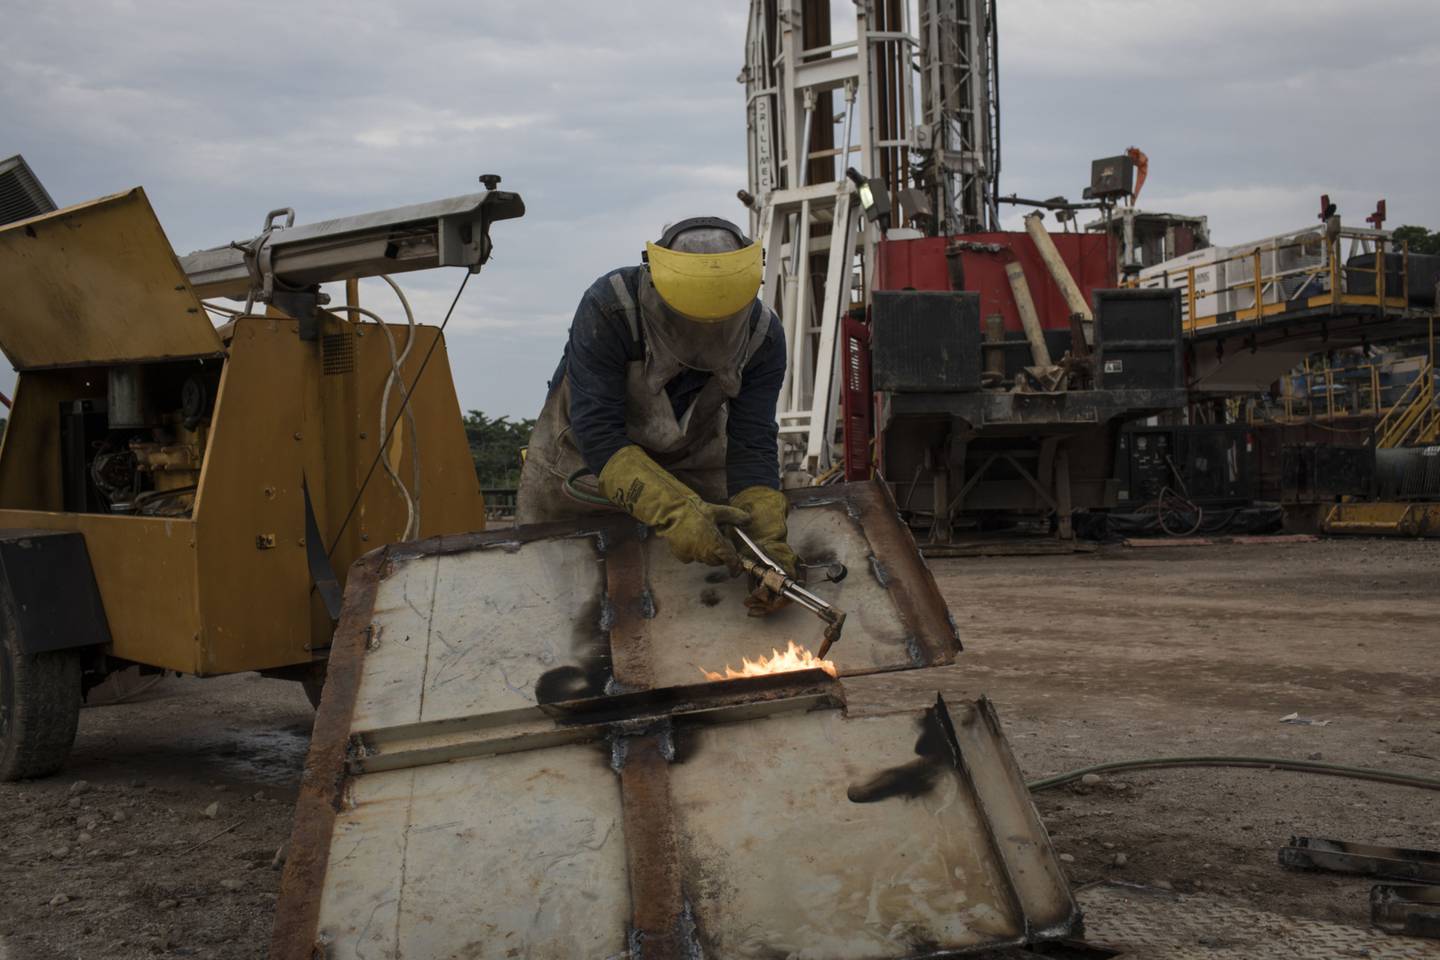 Un empleado opera una antorcha durante las operaciones de mantenimiento en un sitio de extracción cerca de la refinería de Ecopetrol SA en Barrancabermeja, Santander, Colombia, el viernes 20 de abril de 2018.